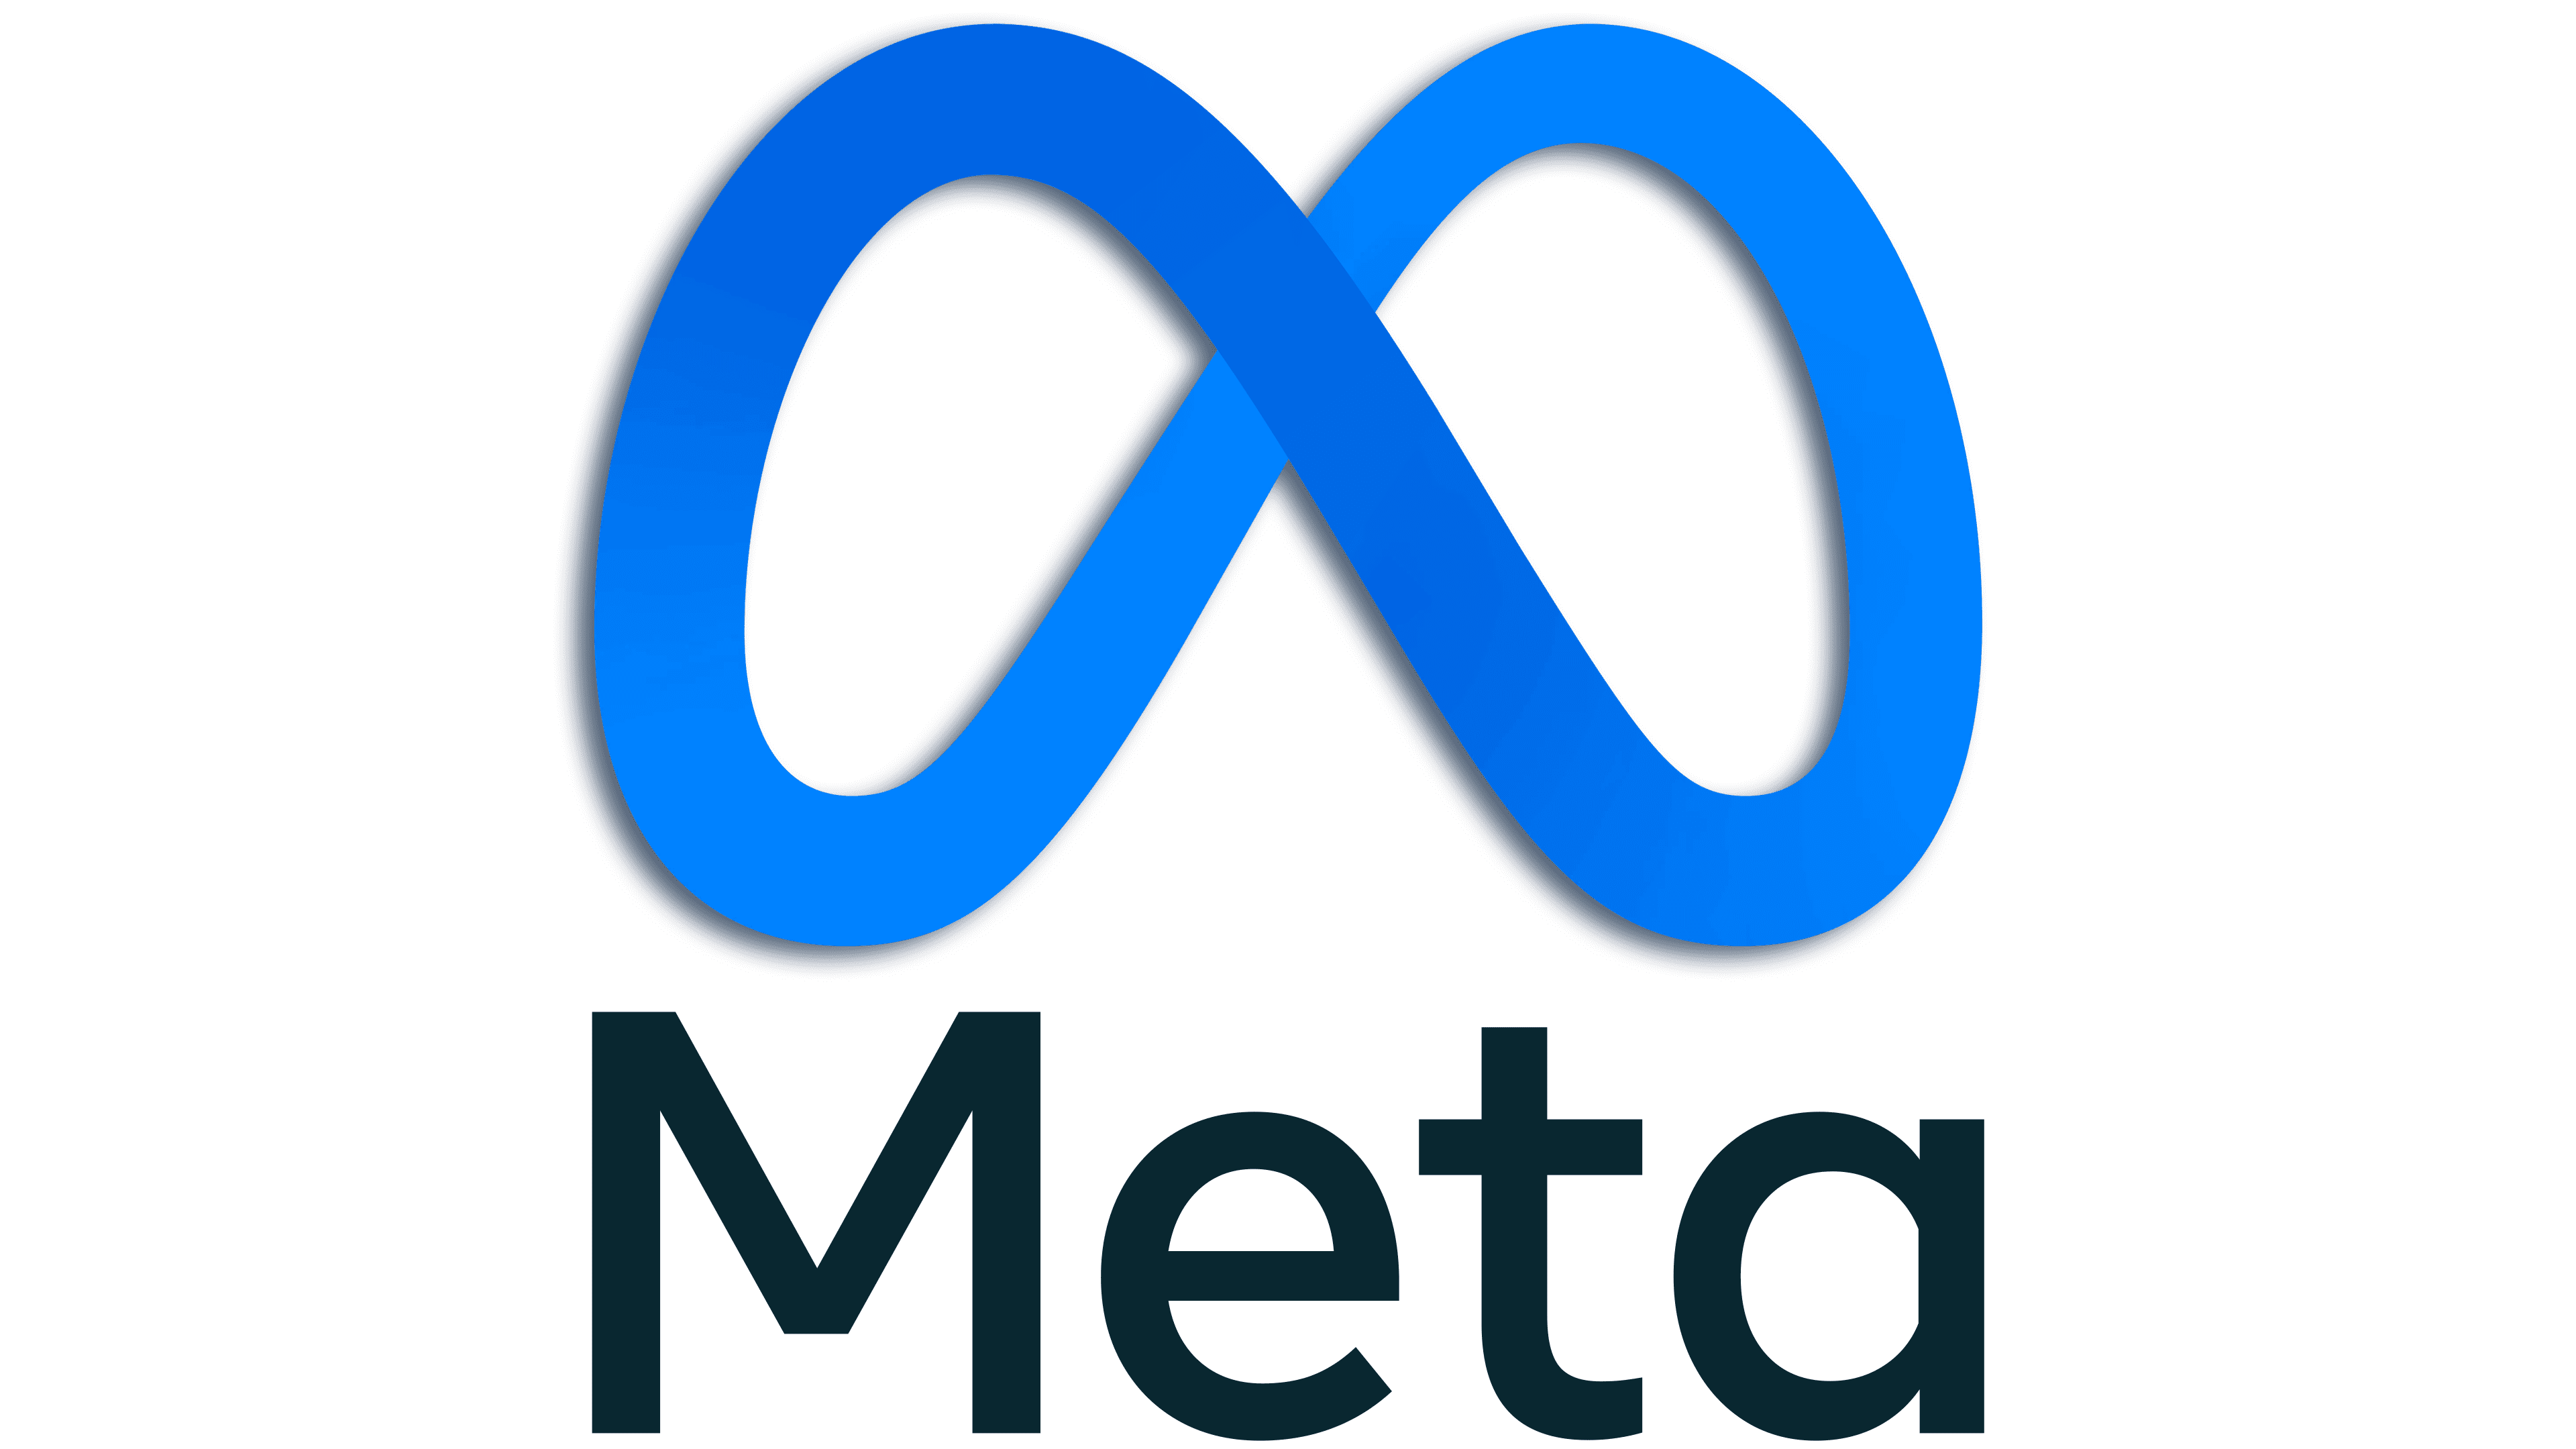 Meta-Symbol